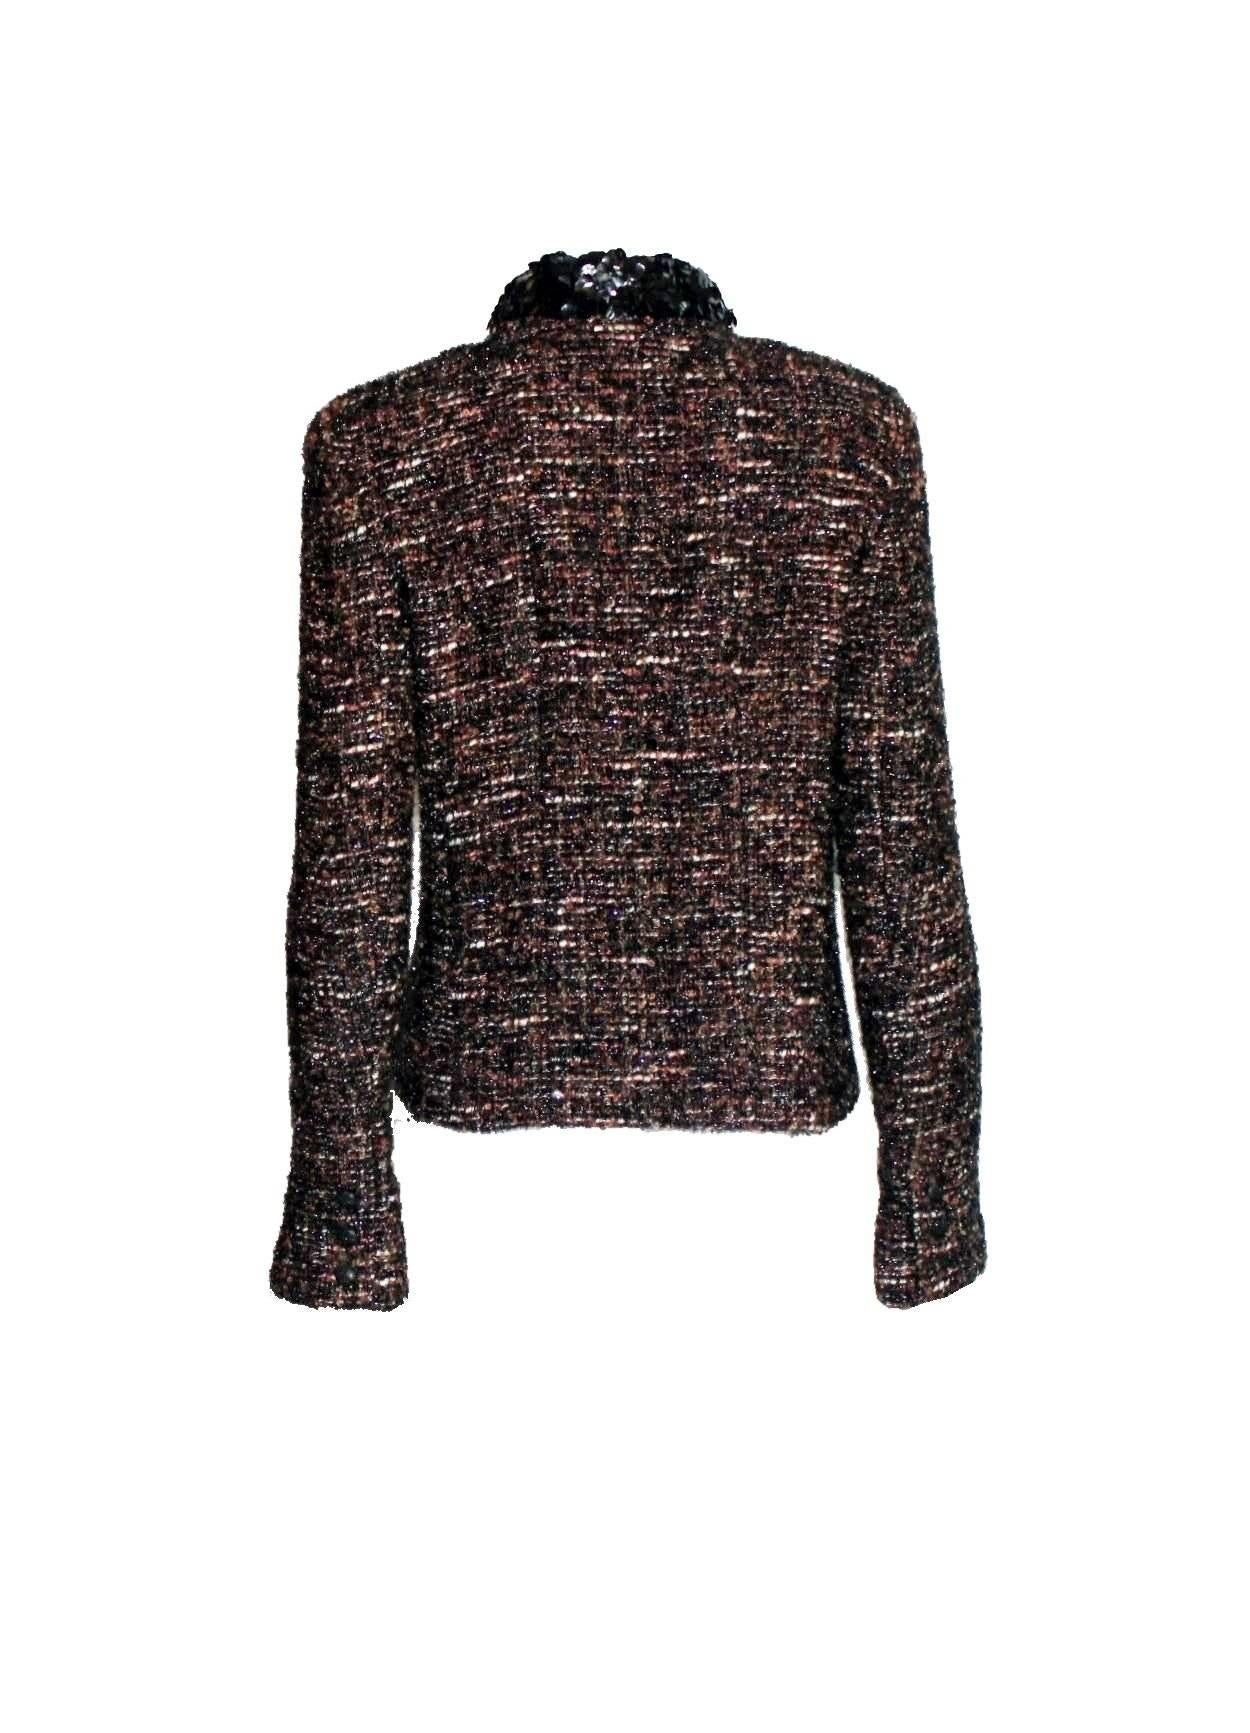 UNWORN Chanel Metallic Fantasy Tweed Sequin Trim Jacket Blazer Skirt Suit 38-40 For Sale 1